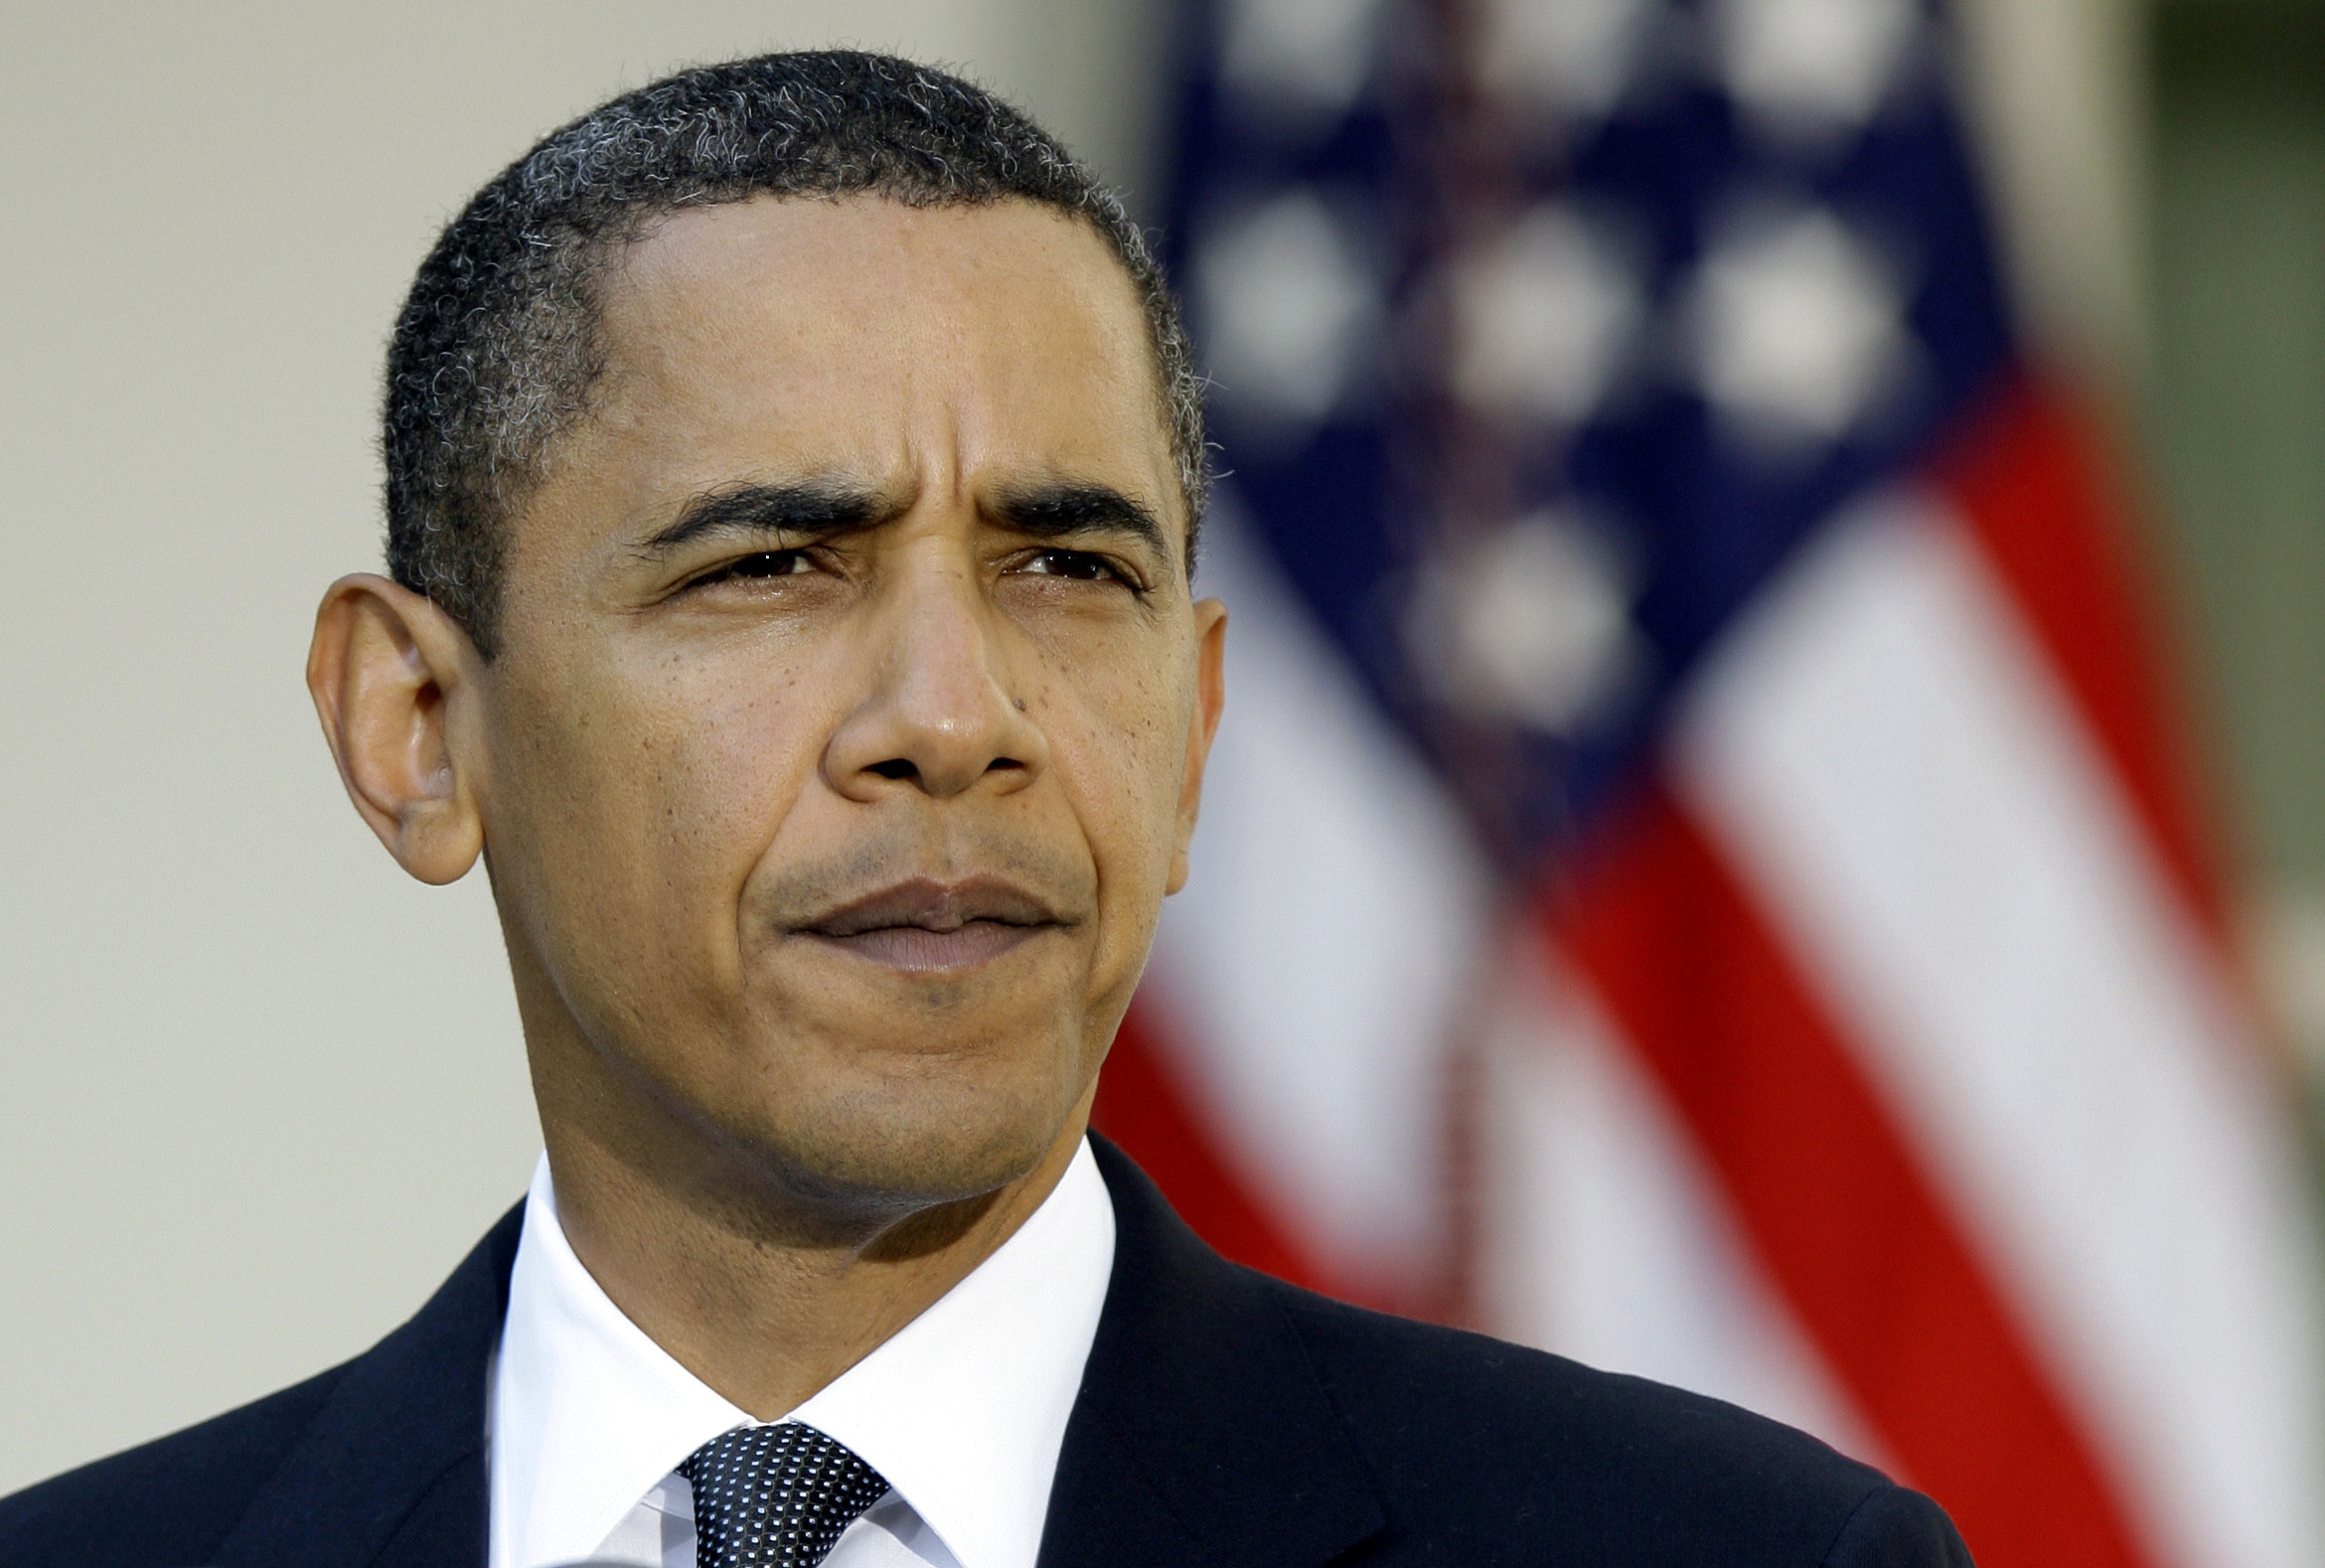 Ο Ομπάμα στέλνει μόνο 300 συμβούλους για να μην “πέσει” η Βαγδάτη